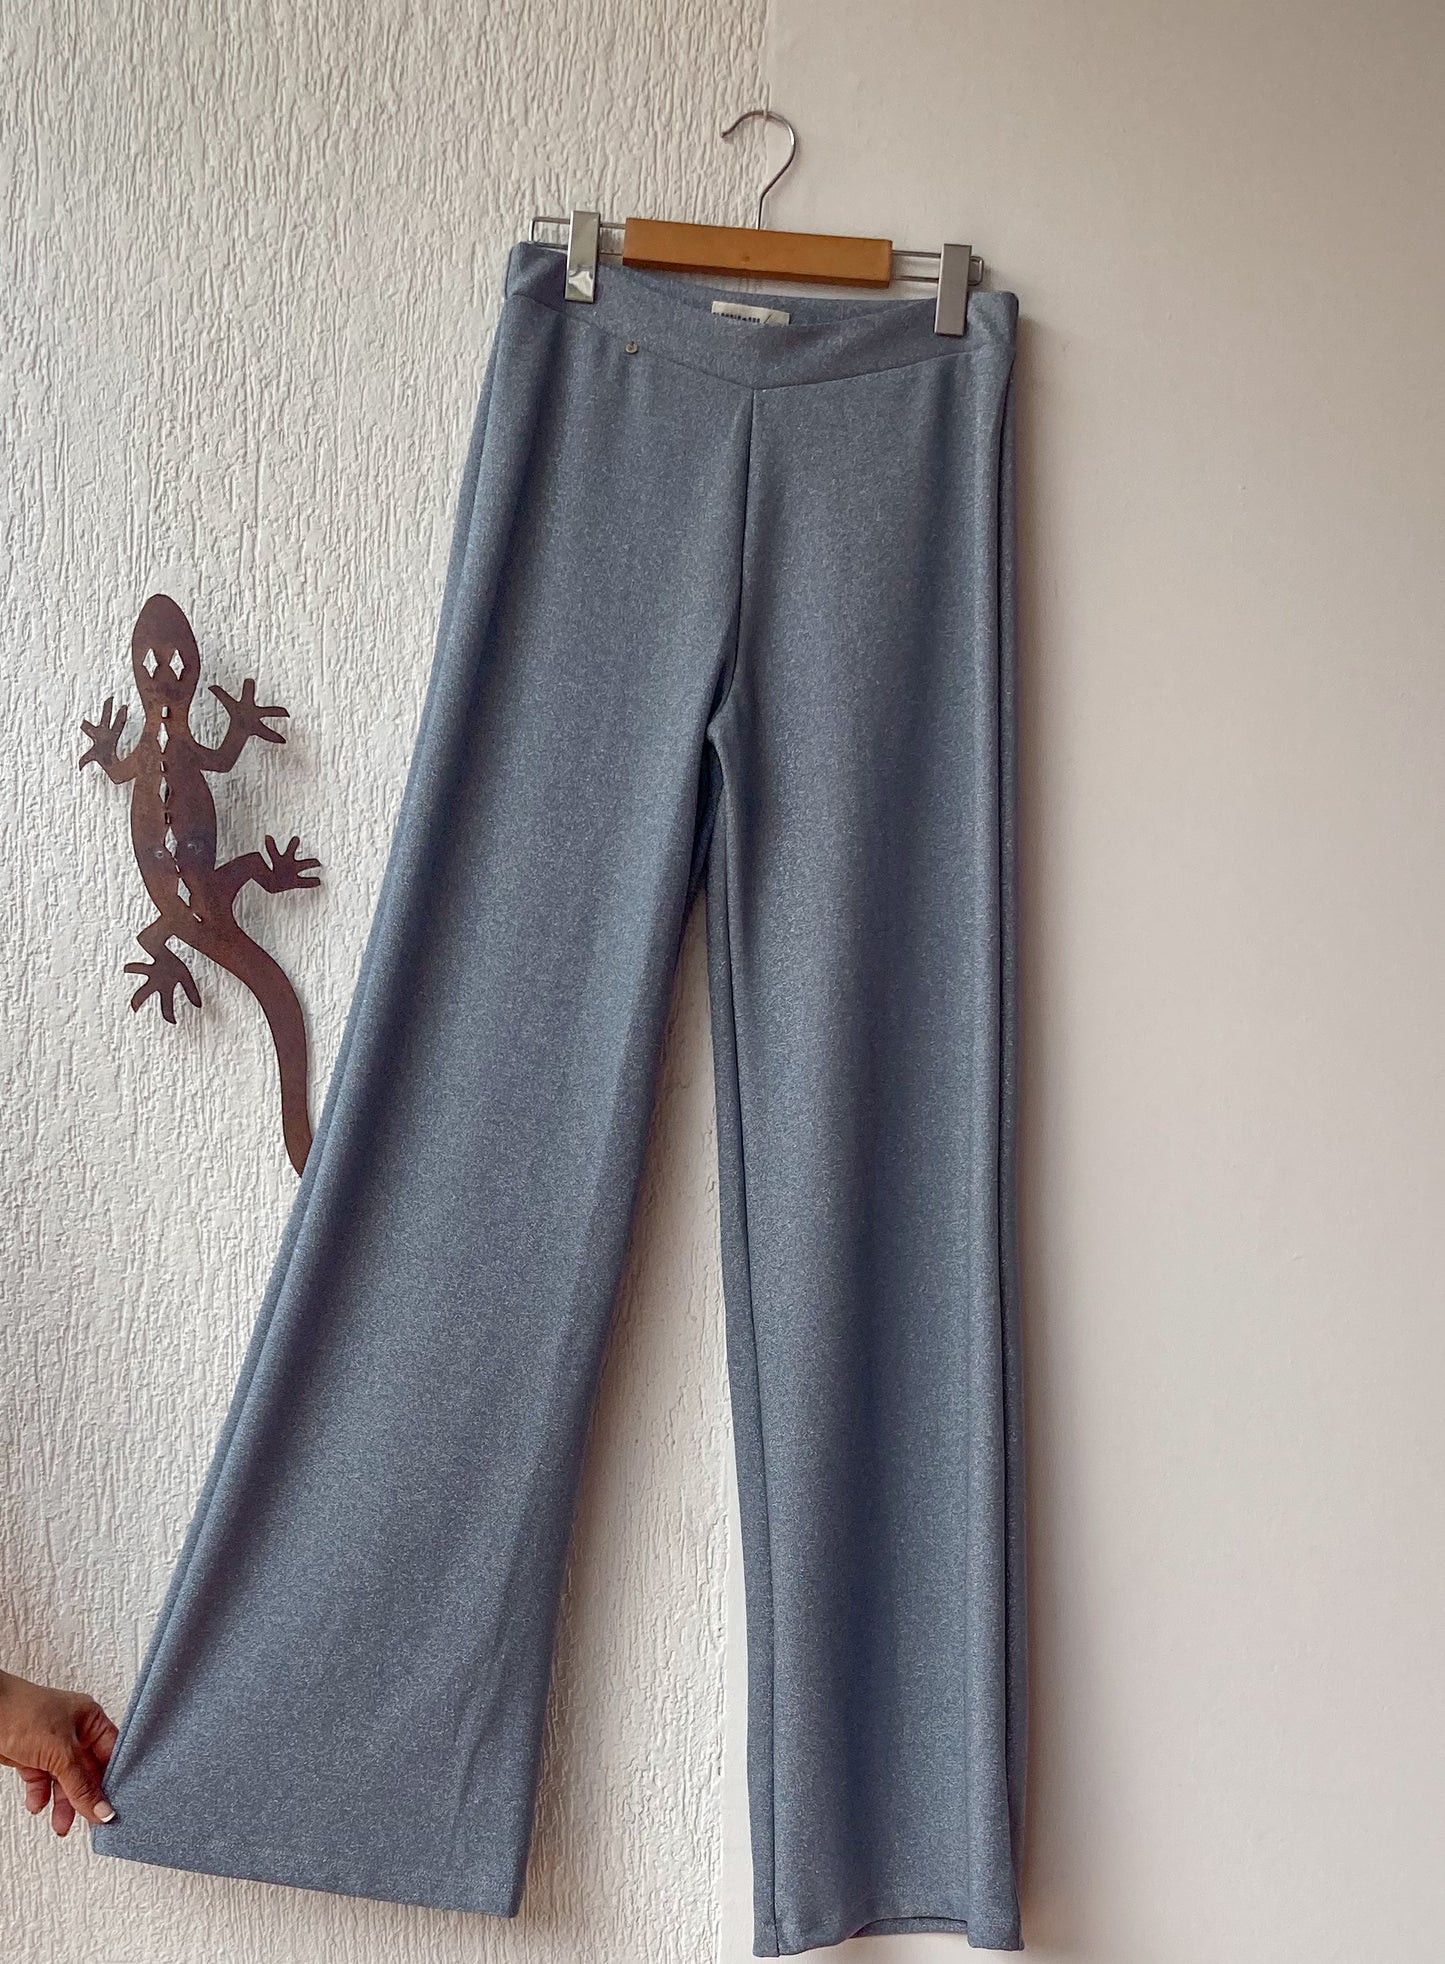 Pantalón wide leg brillante noor, en tela gris  elástica que se ajusta perfecto al cuerpo. 100% Colombiano